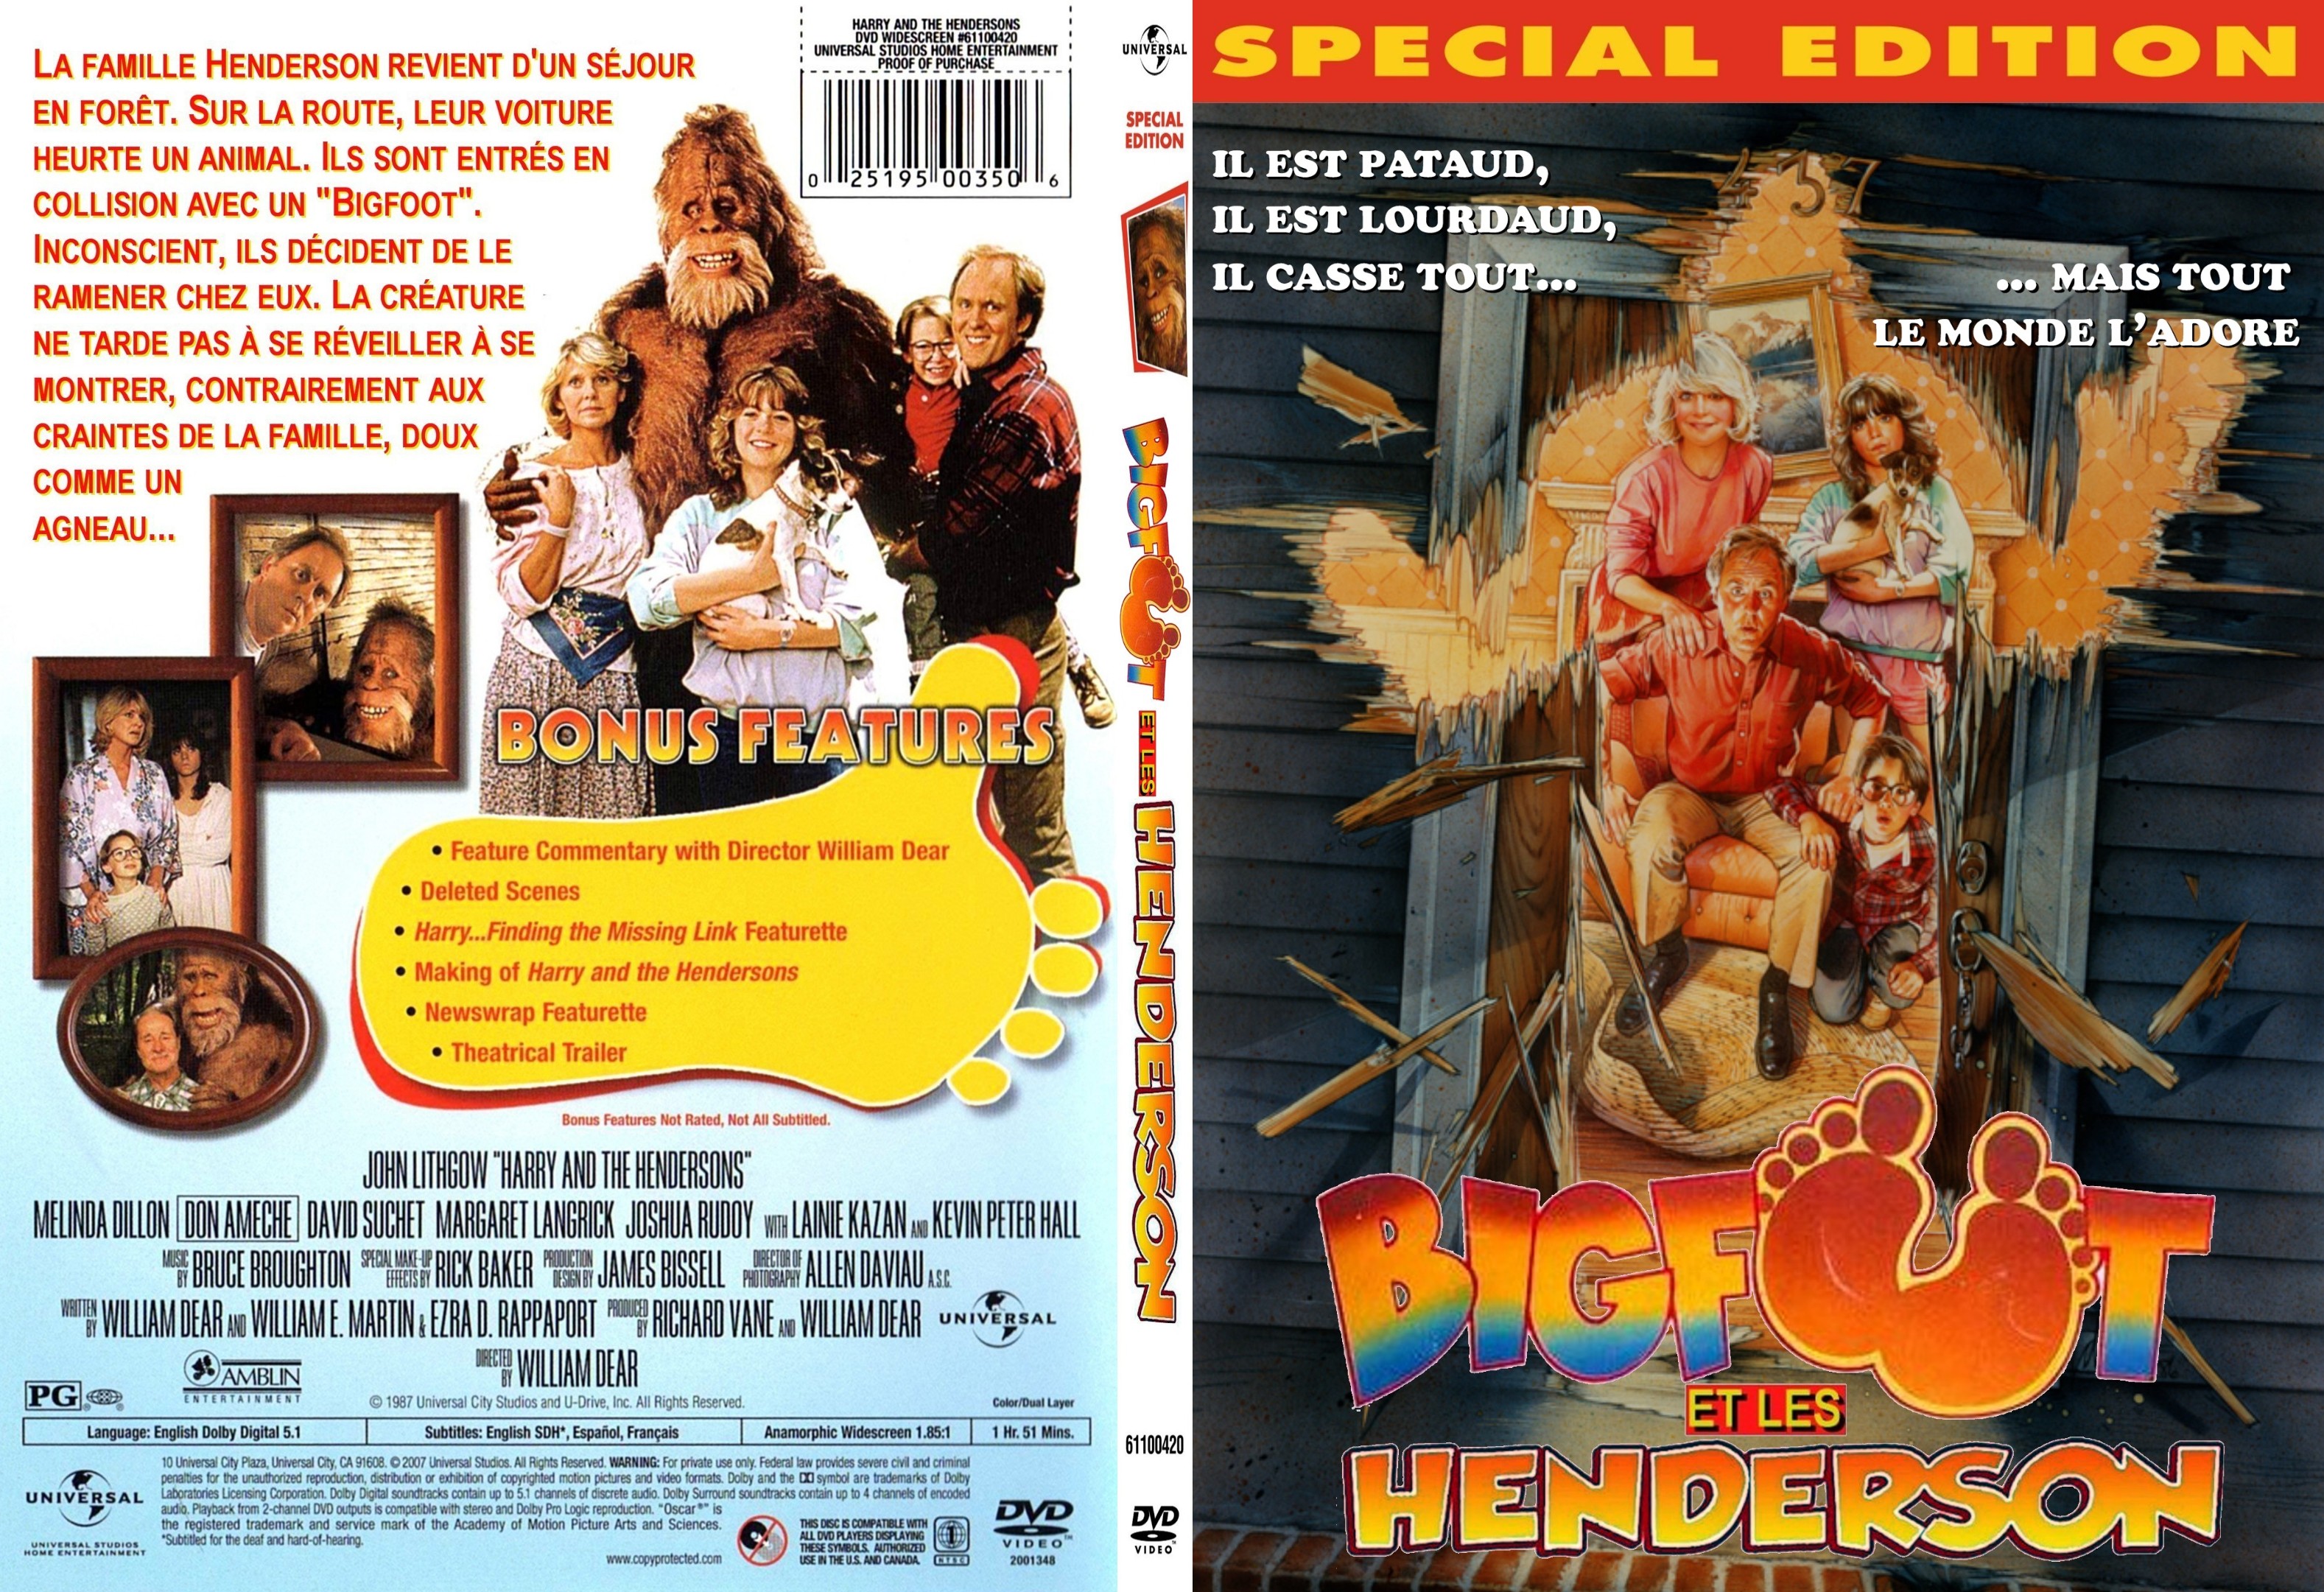 Jaquette DVD Bigfoot et les Henderson custom - SLIM v2